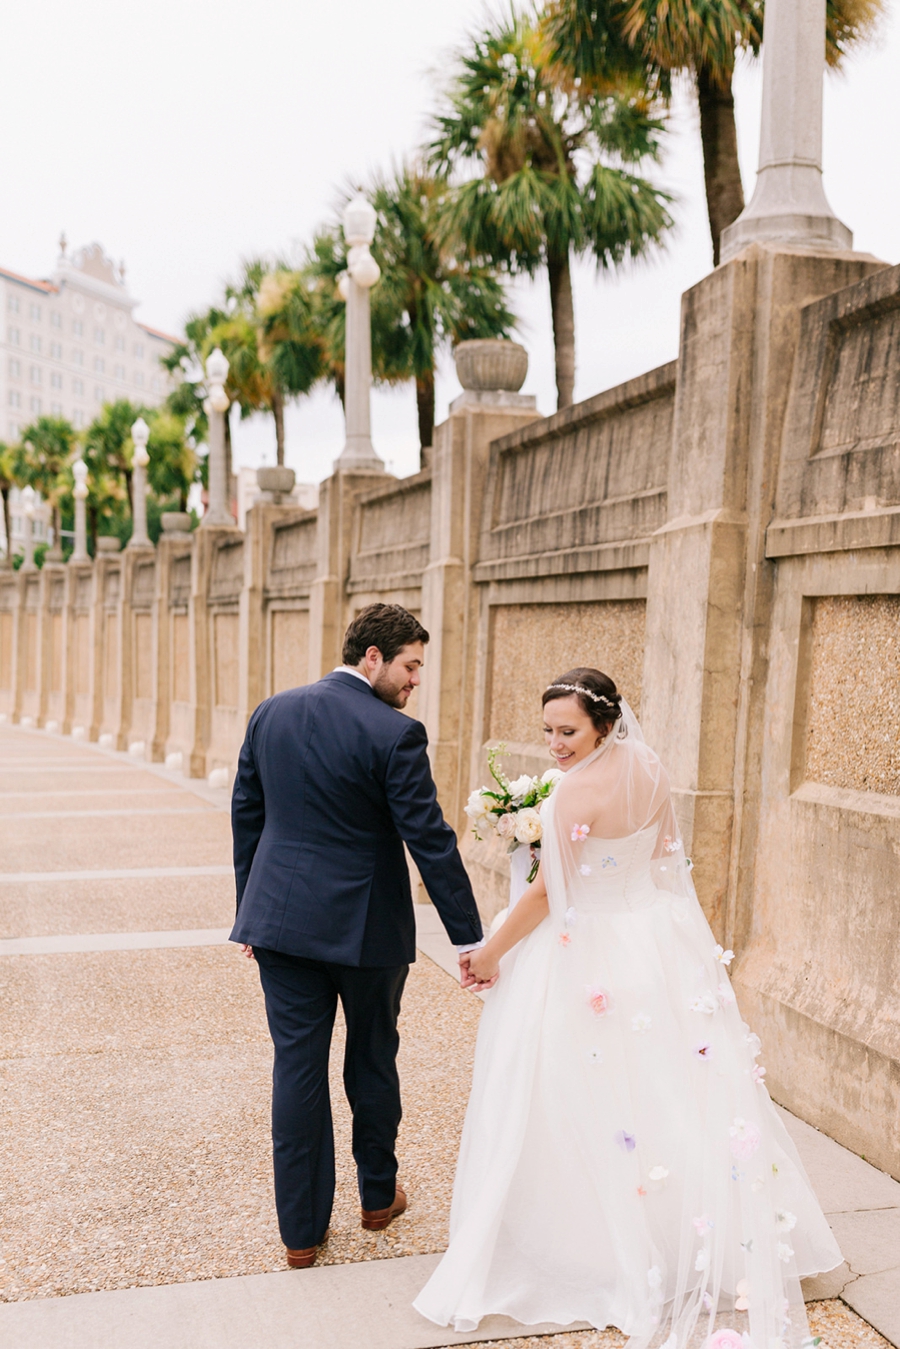 A Southern Garden Inspired Wedding In Central Florida via TheELD.com